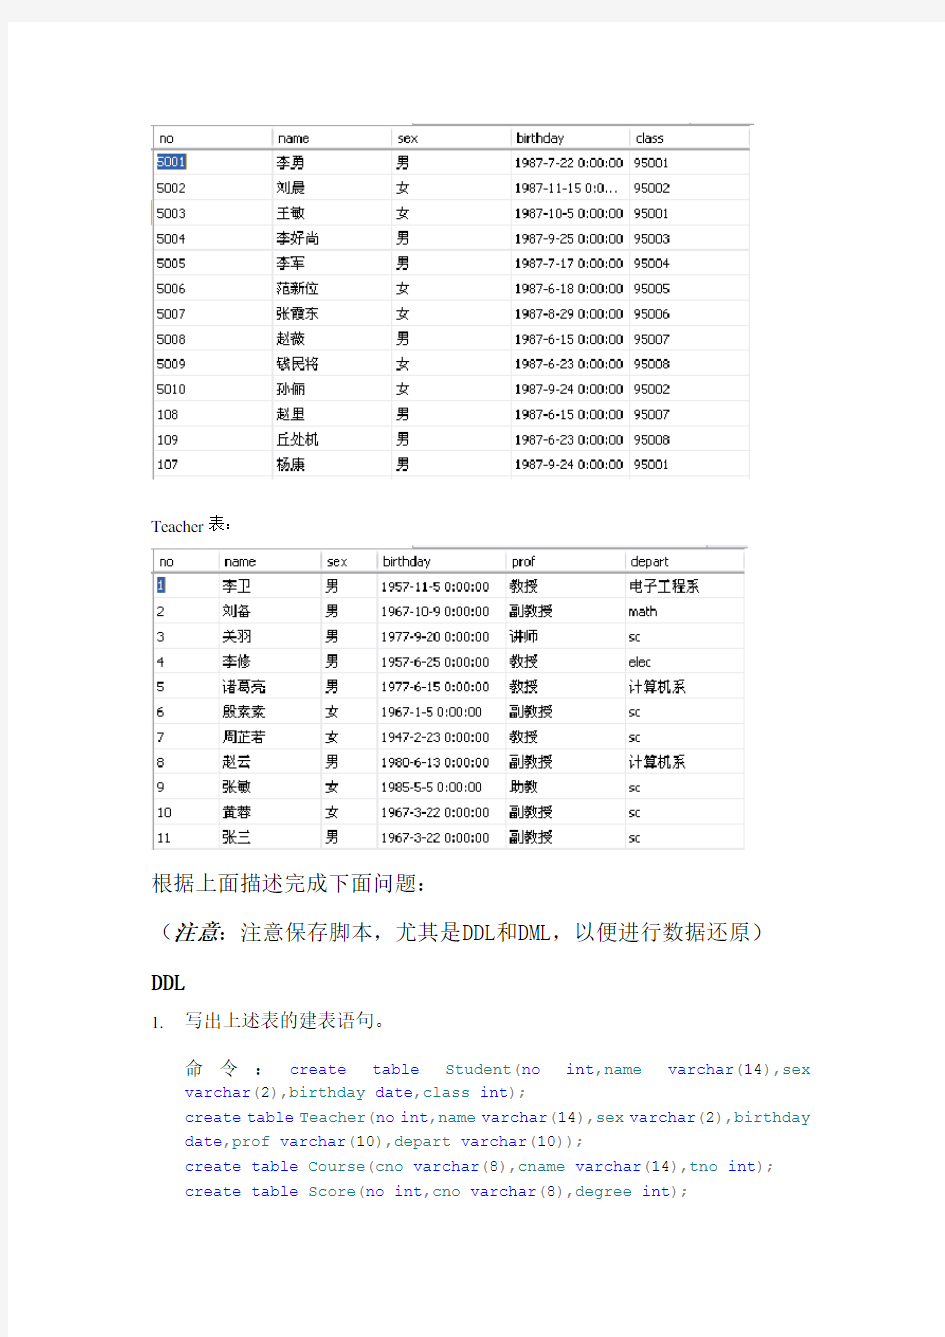 数据库sql查询语句练习2_习题_结果(单世民)